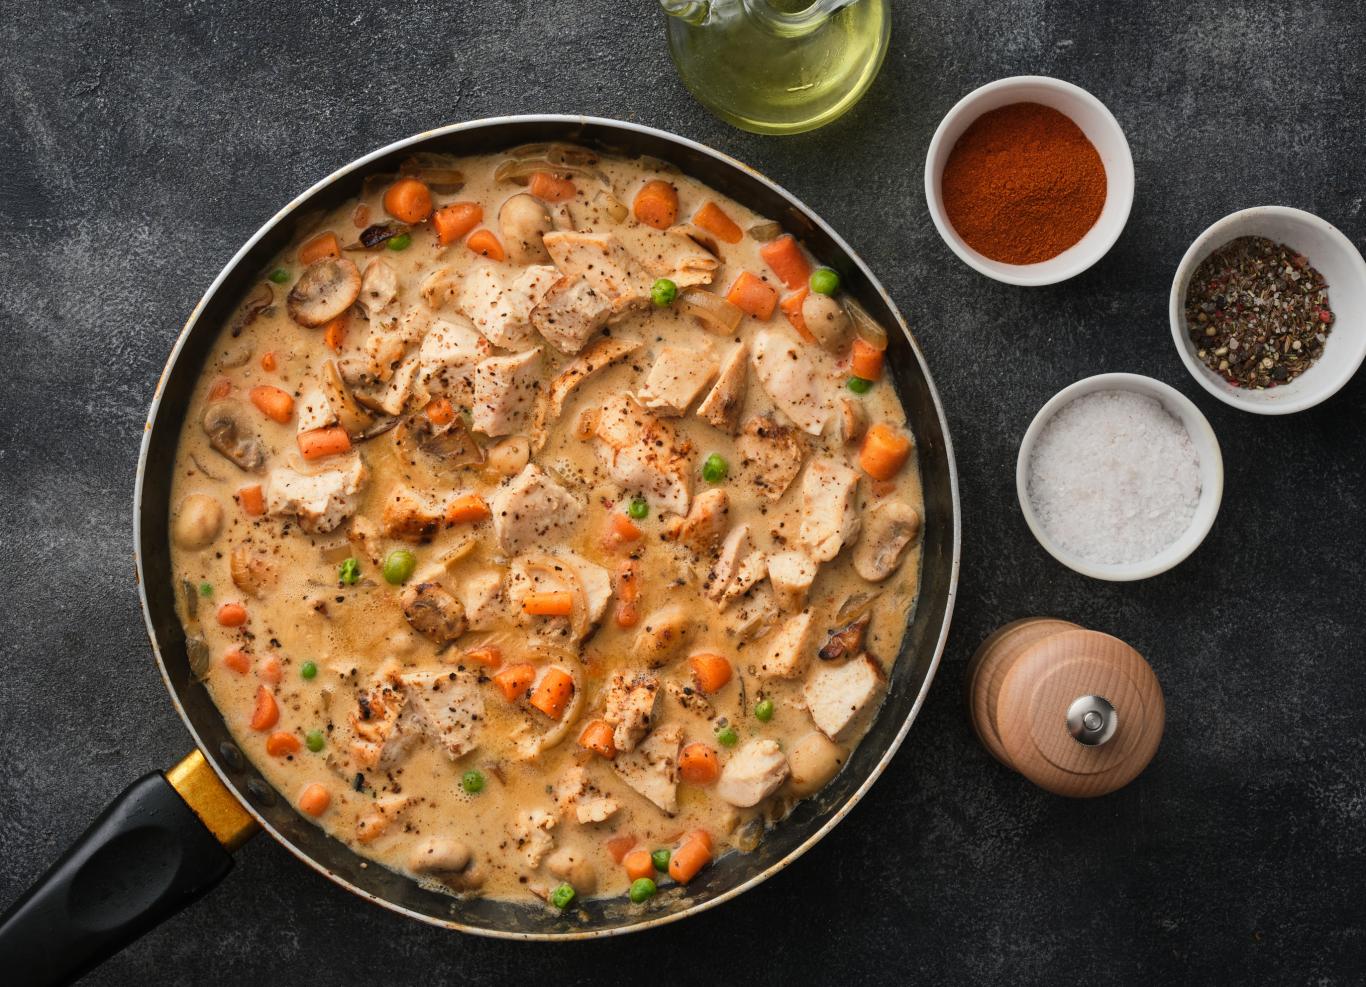 “c’est vraiment le plat de famille, tout le monde adore” : cyril lignac partage sa recette de sauté de volaille au paprika